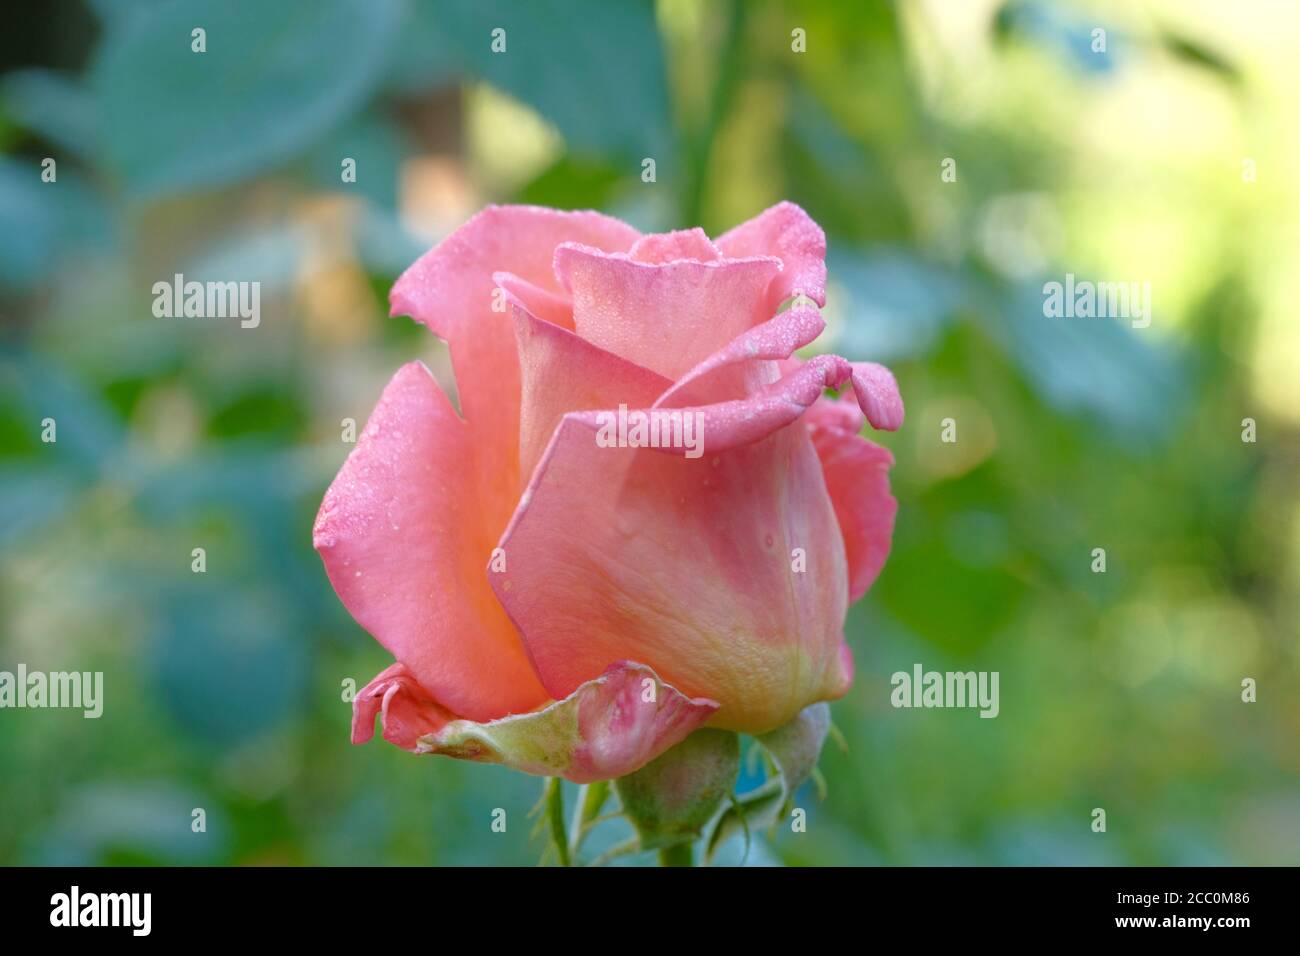 Rosa schöne Rose Knospe Nahaufnahme auf einem verschwommenen grünen Hintergrund. Tau tropft auf die Blütenblätter. Bild für Karten, Hochzeitseinladungen, Vollformat. Stockfoto